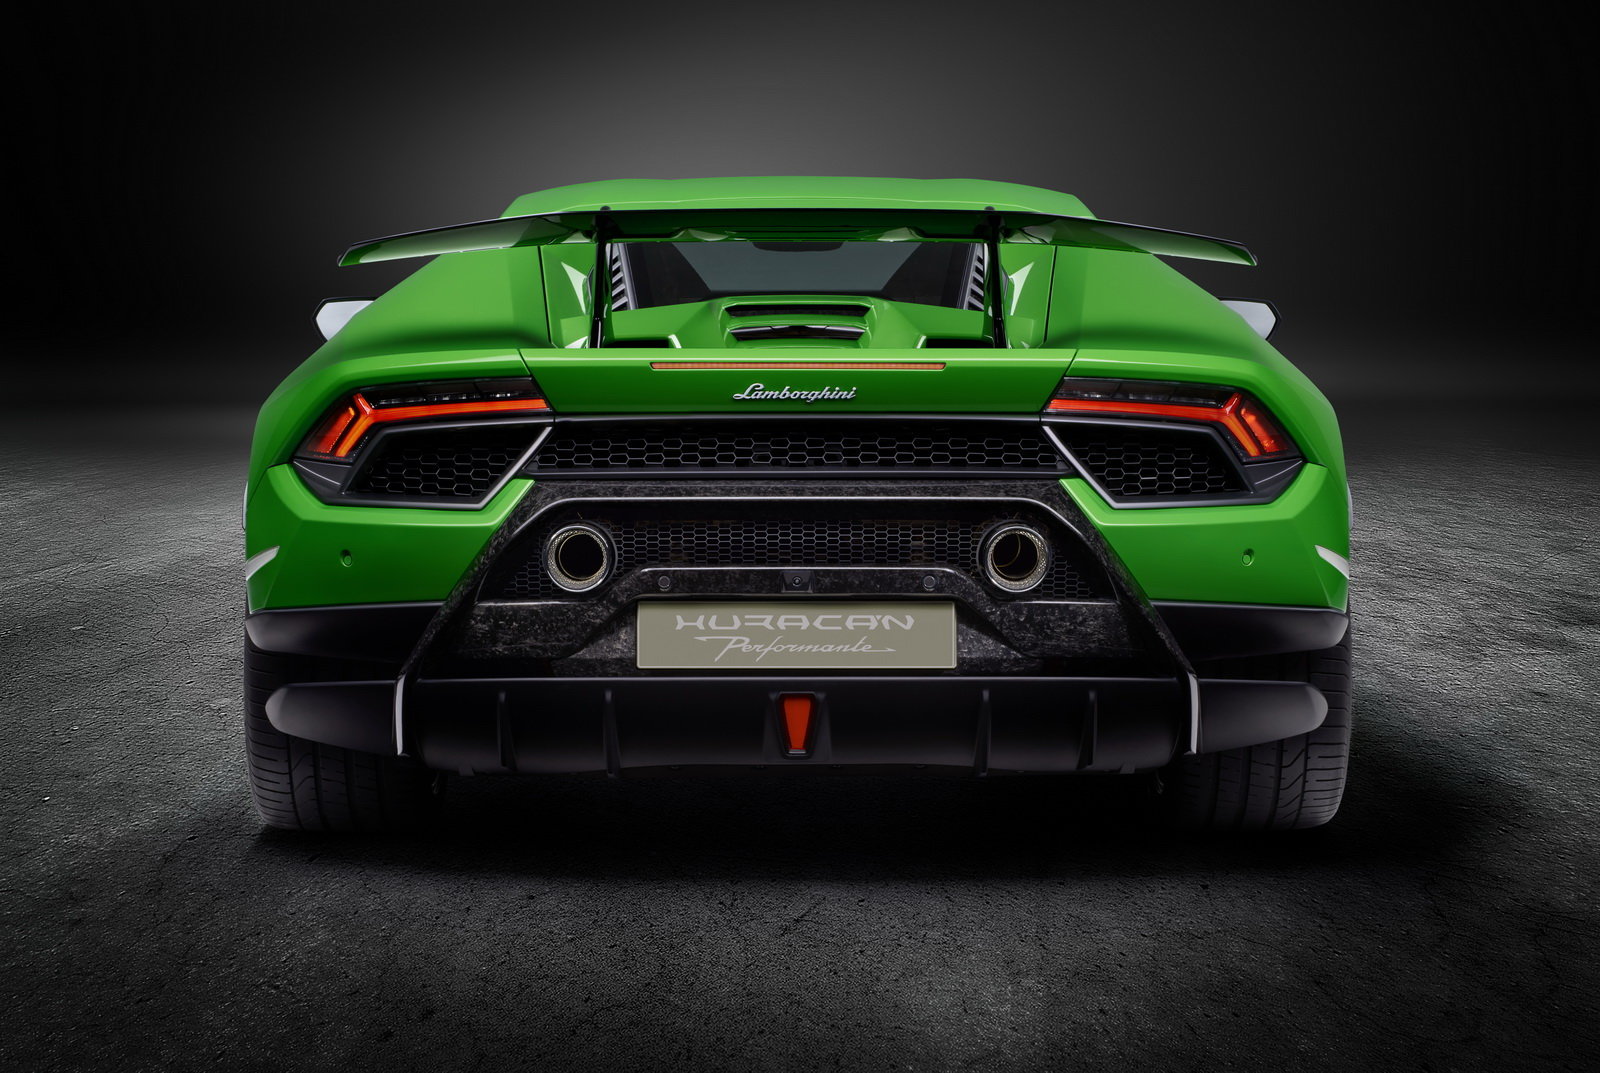 Huracán Performante je aktuálně to nejlepší od Lamborghini.